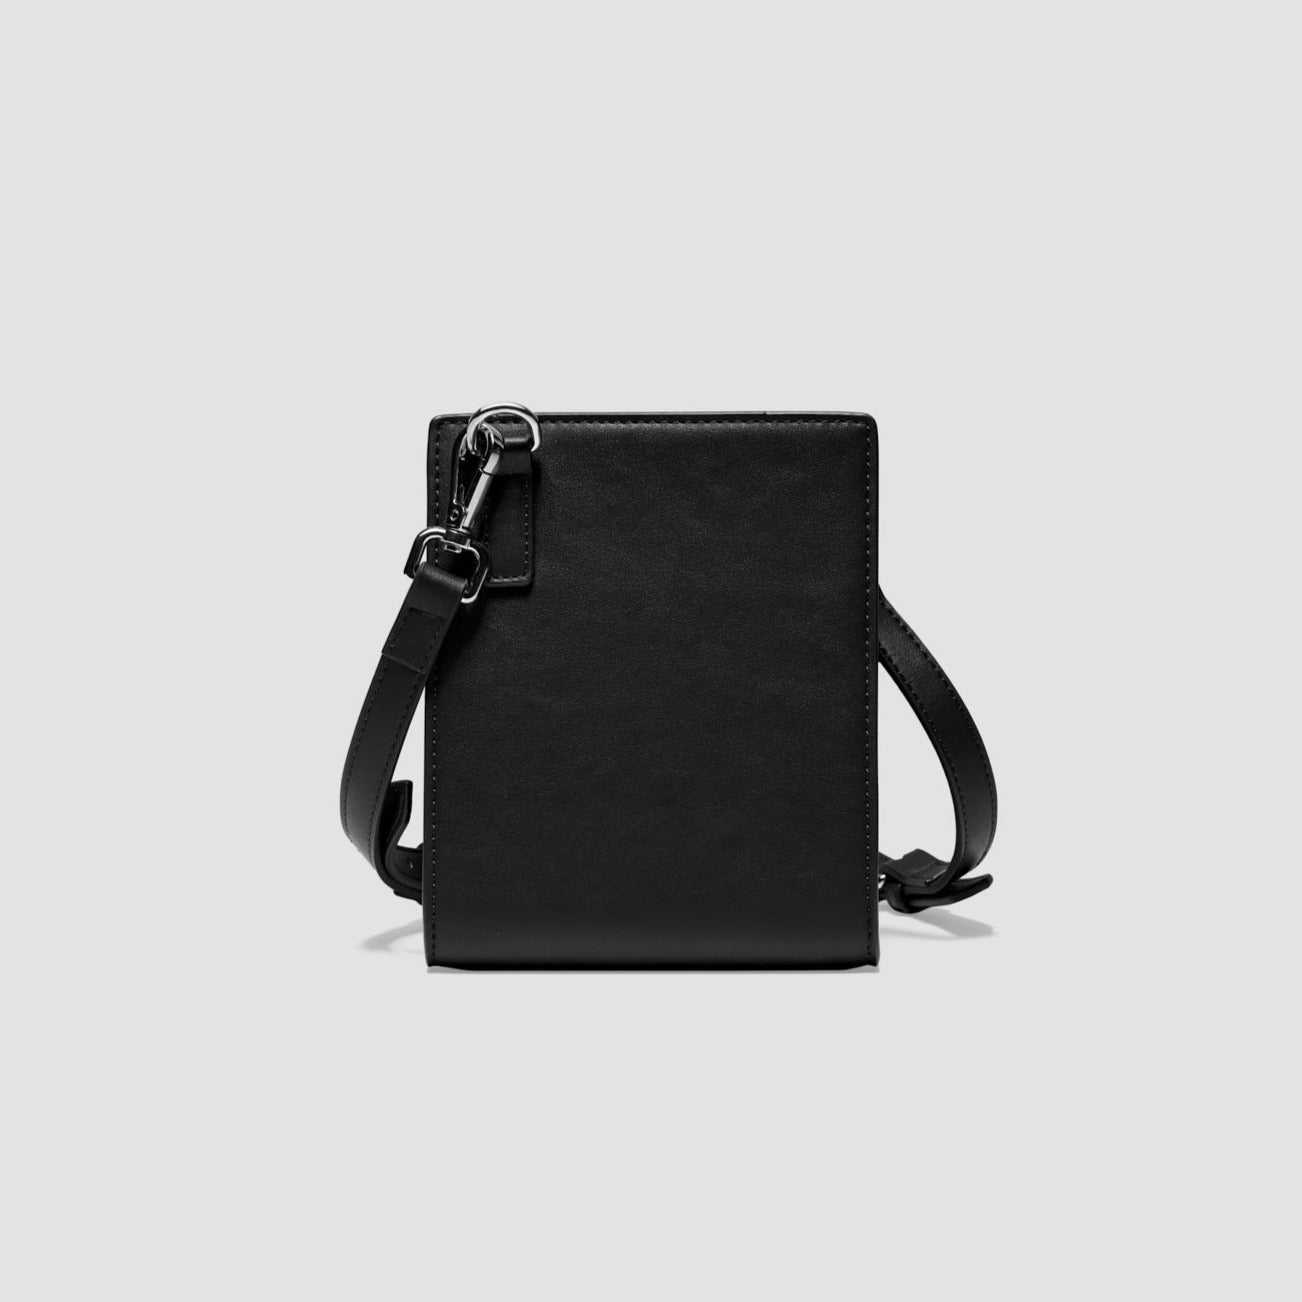 The Proper Cross Body Bag ™ Stylish Nero - The Proper Label ™